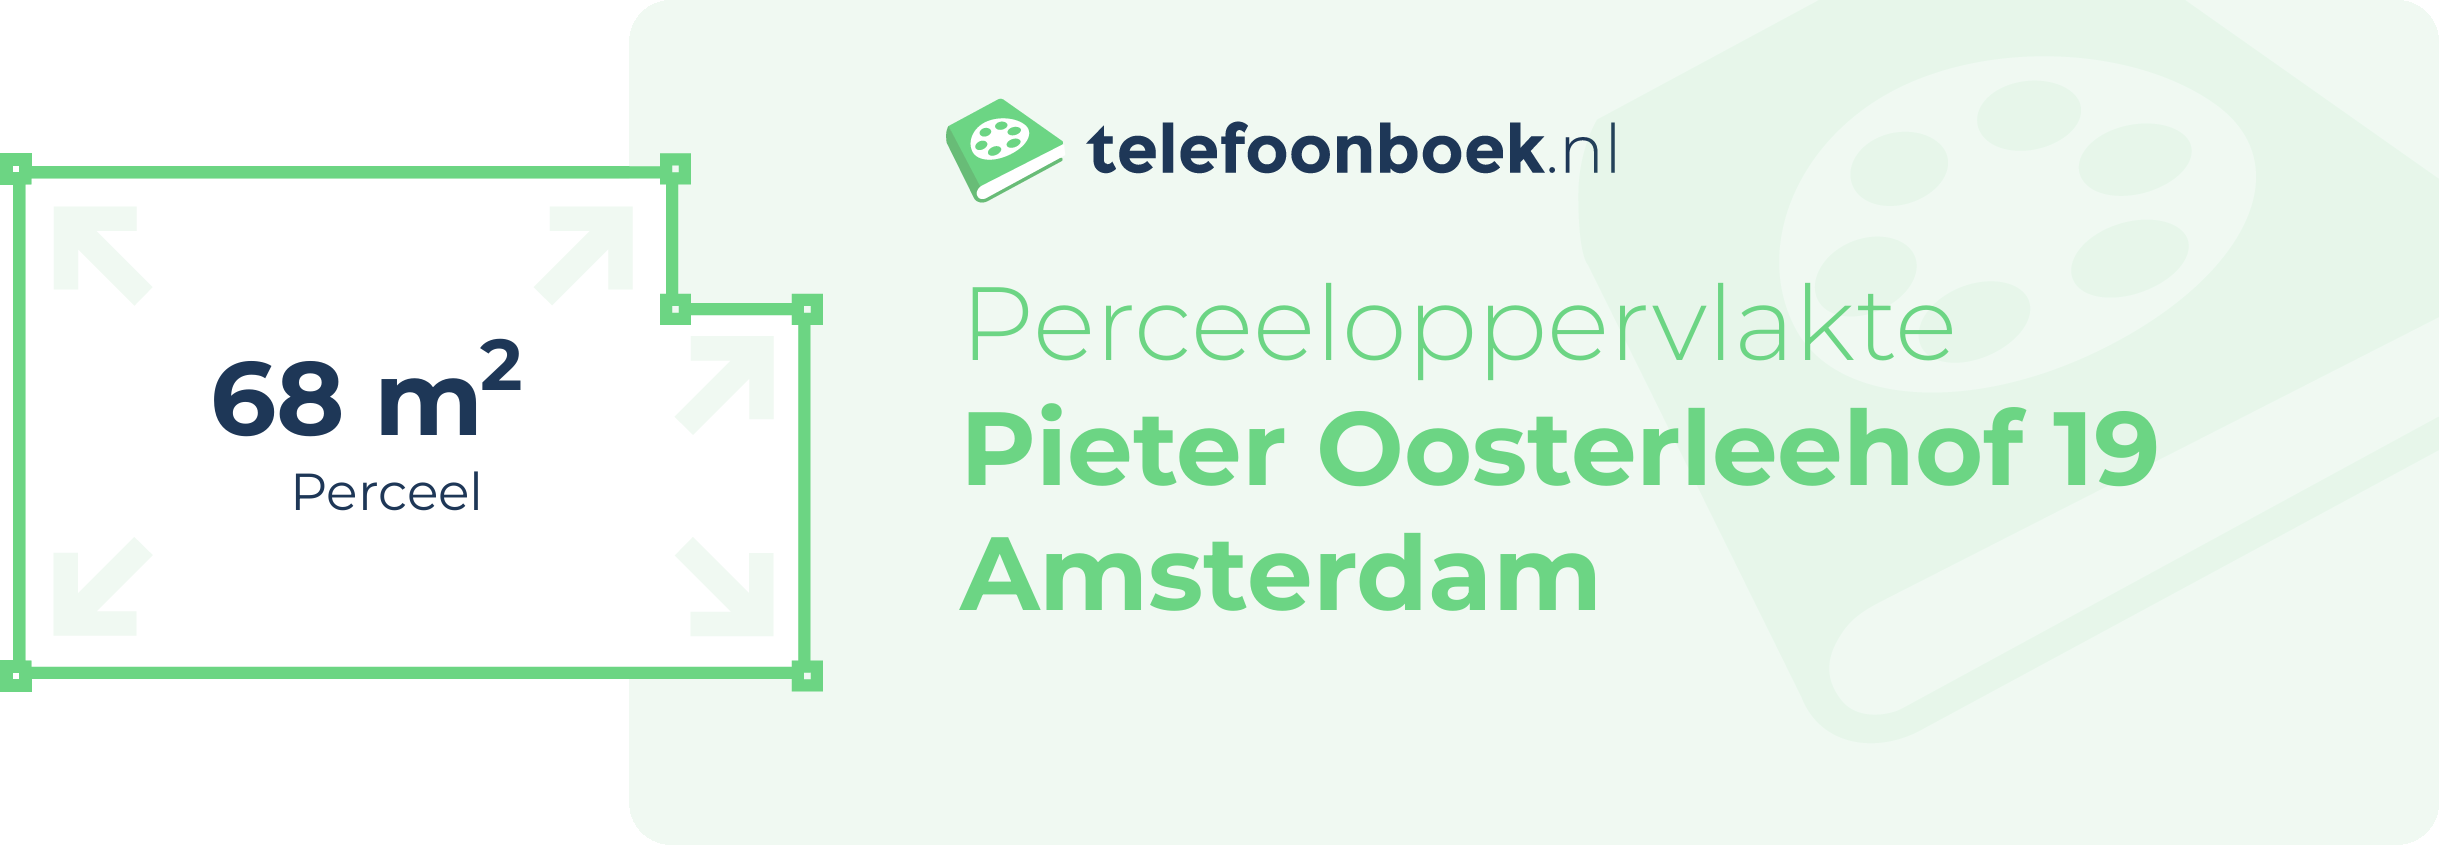 Perceeloppervlakte Pieter Oosterleehof 19 Amsterdam